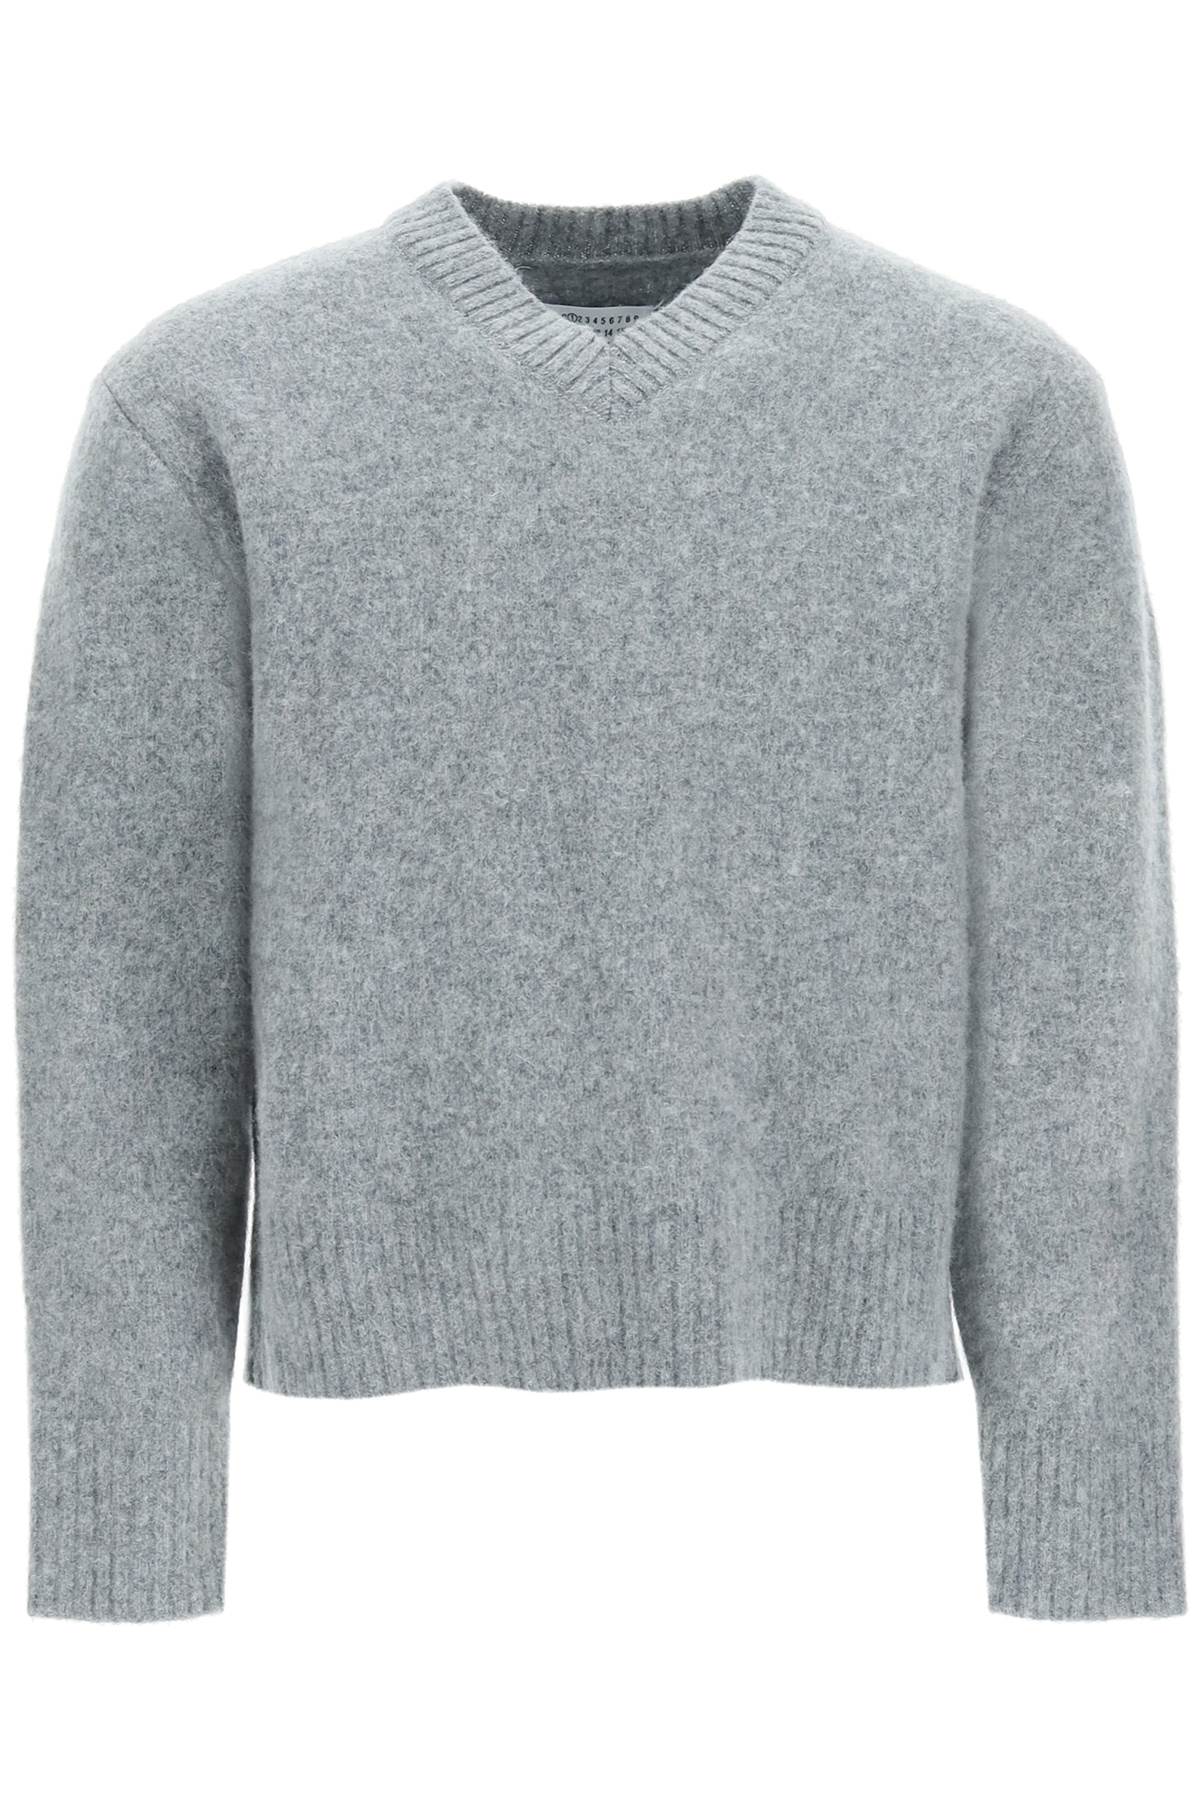 Maison Margiela Cropped V-neck Sweater